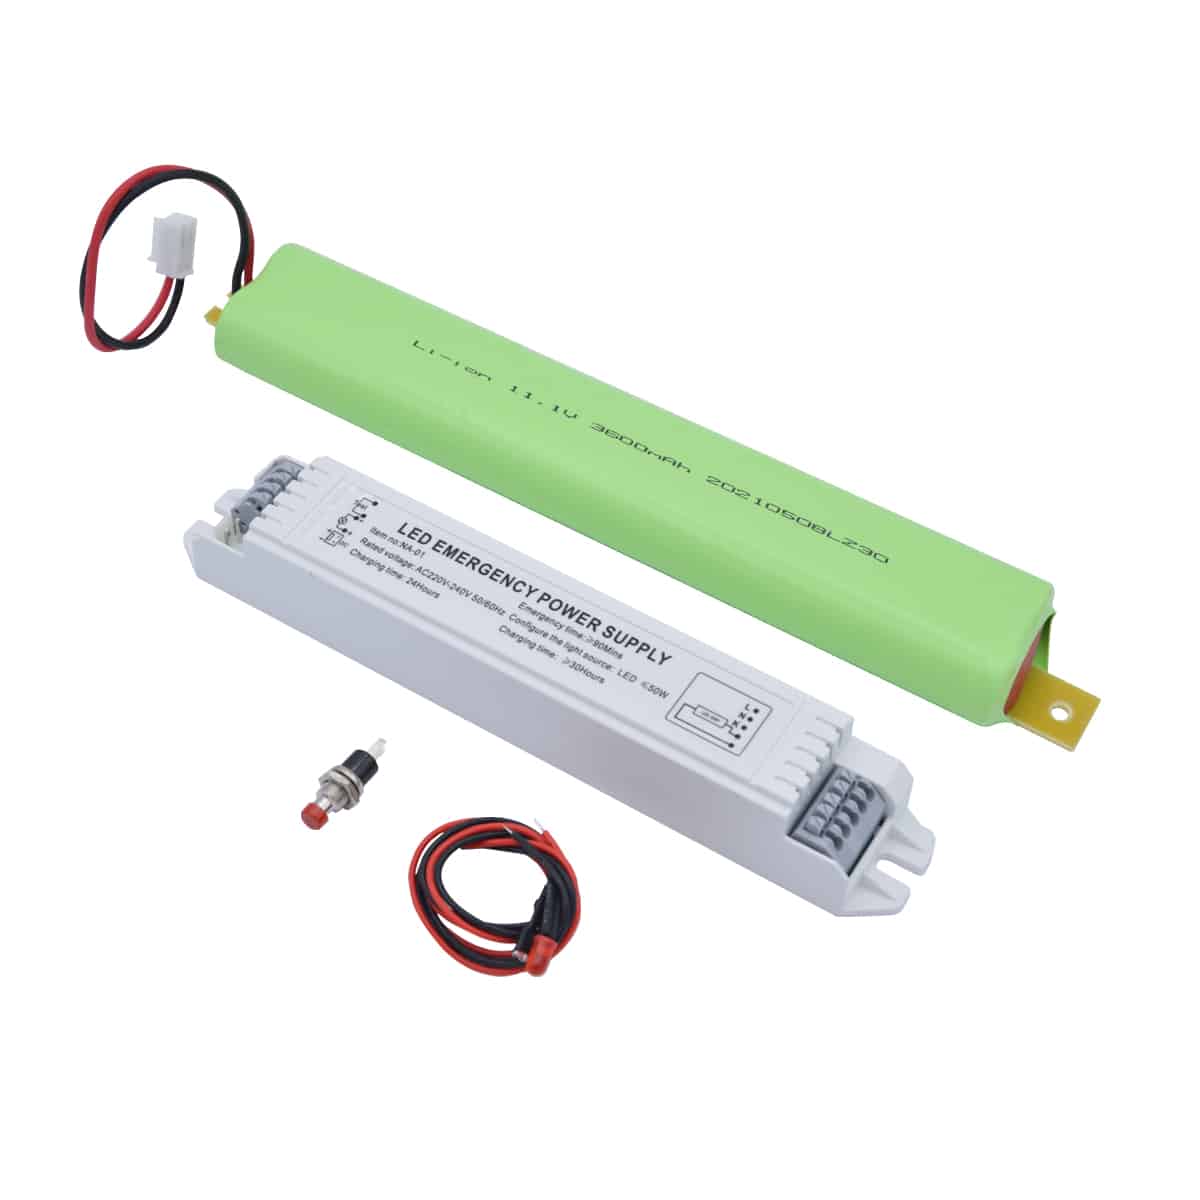 Kit driver di emergenza LED universale con uscita 220V con batteria al  litio - Eurekaled